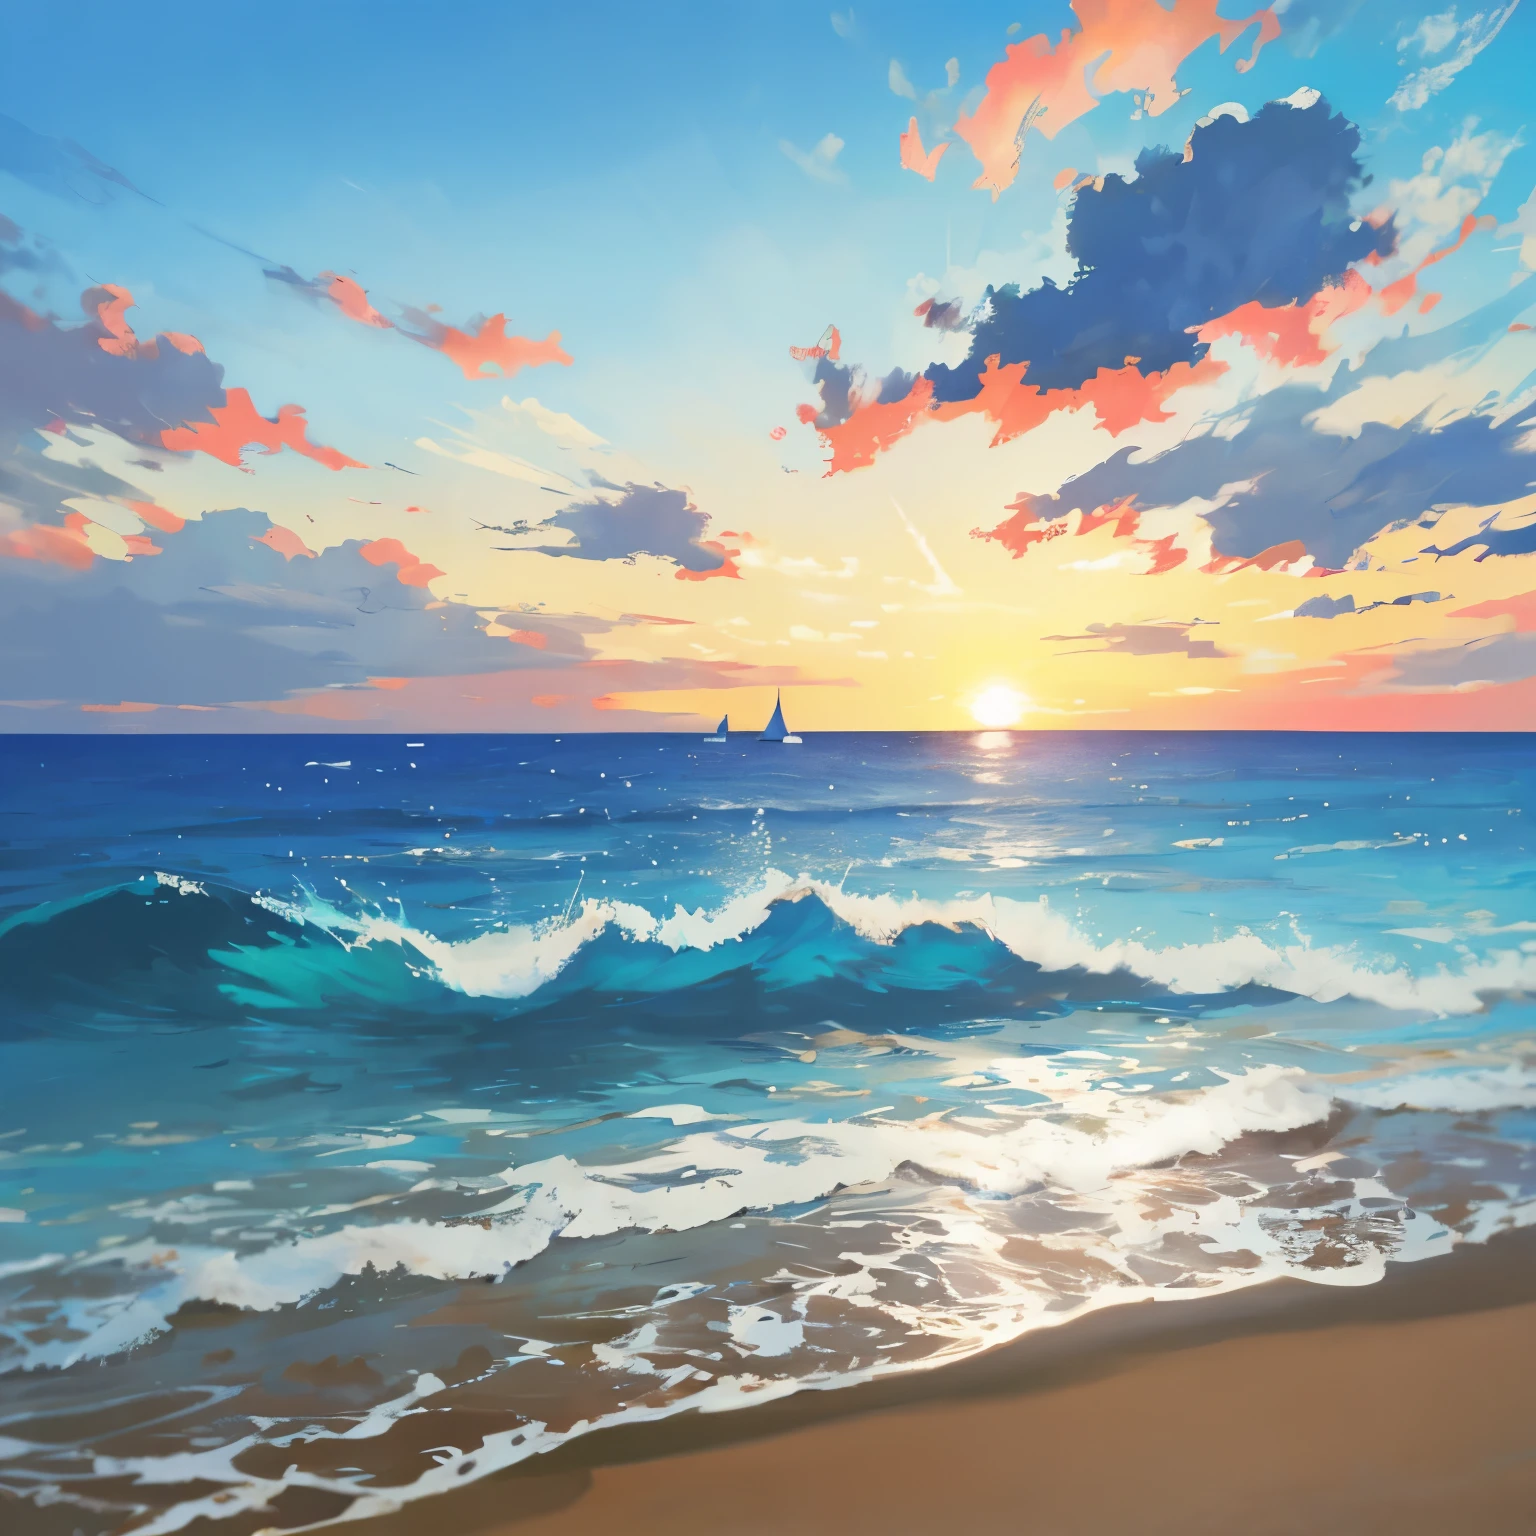 青い海岸: 最高のディテールと傑作品質を備えた息を呑むような海景画. 海岸線は、海岸線に優しく打ち寄せる鮮やかな青い海で飾られています。, 穏やかで落ち着いた雰囲気を醸し出す. 太陽が沈み始める, 暖かい, シーン上の金色の輝き, 波と複雑な質感の砂を照らす. 遠方に, 水面を楽々と滑る帆船のシルエットが見える, 帆が沈む太陽の柔らかな光を捉えている. 背景は被写界深度で満たされている, 豊かな植生と海岸からそびえる丘陵地帯を誇示する. 青い海岸は